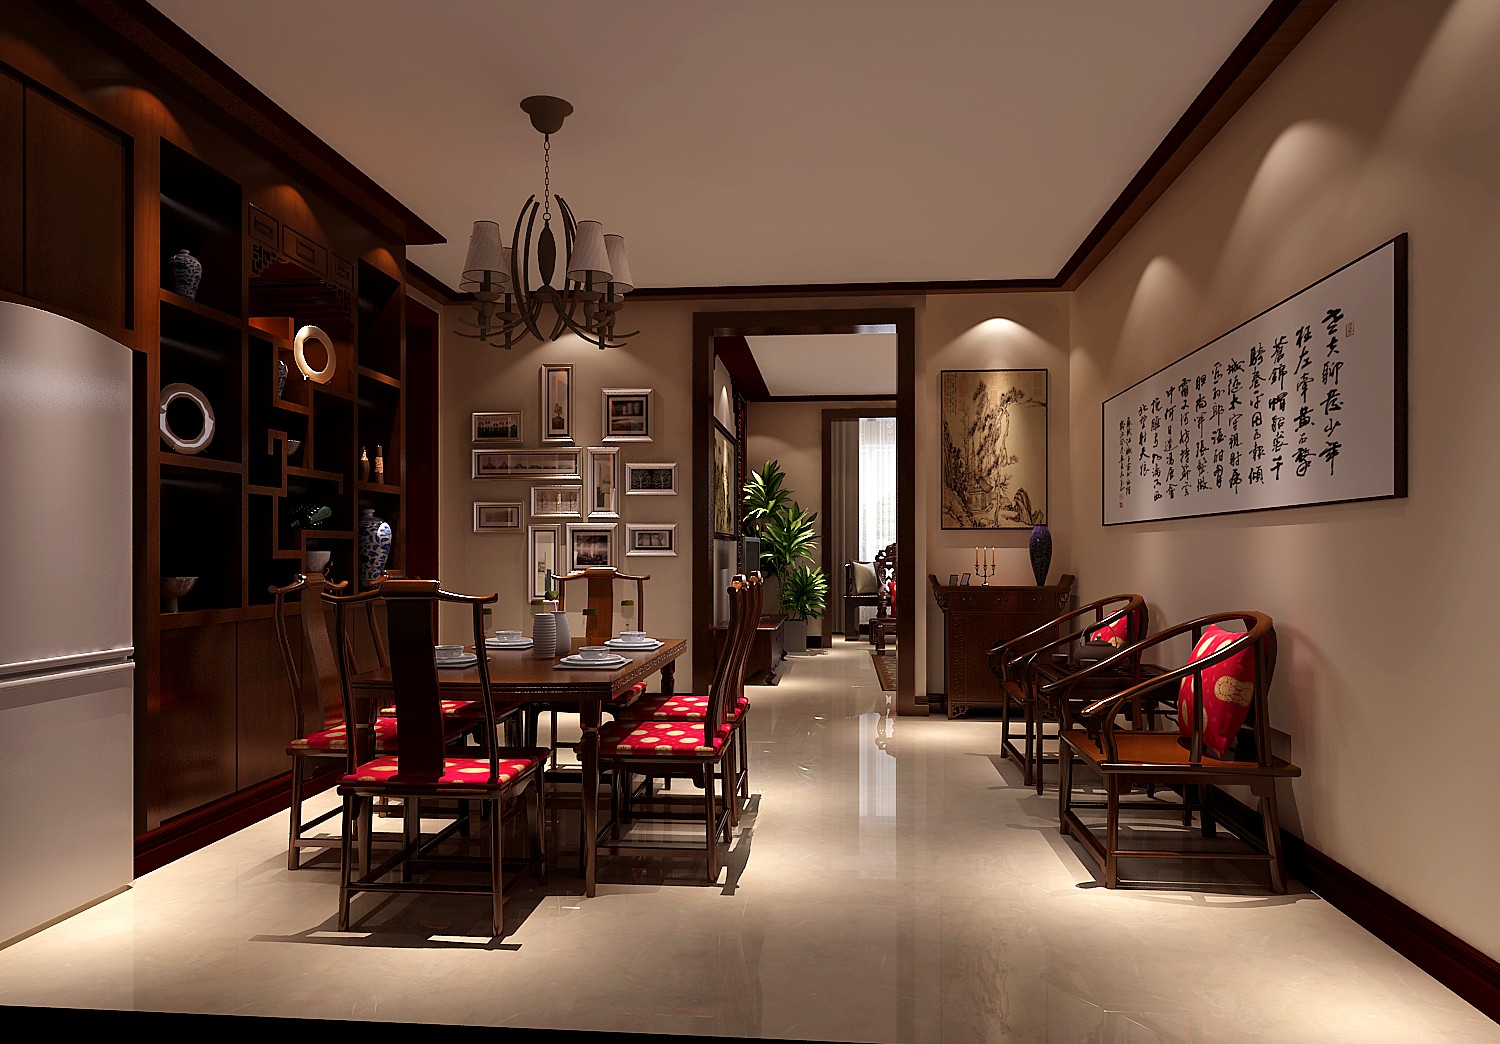 中式 新古典 传统风格 复古 中国韵味 二居 收纳 实用 定制家具 餐厅图片来自成都高度国际在100㎡——中式风格——花园洋房的分享